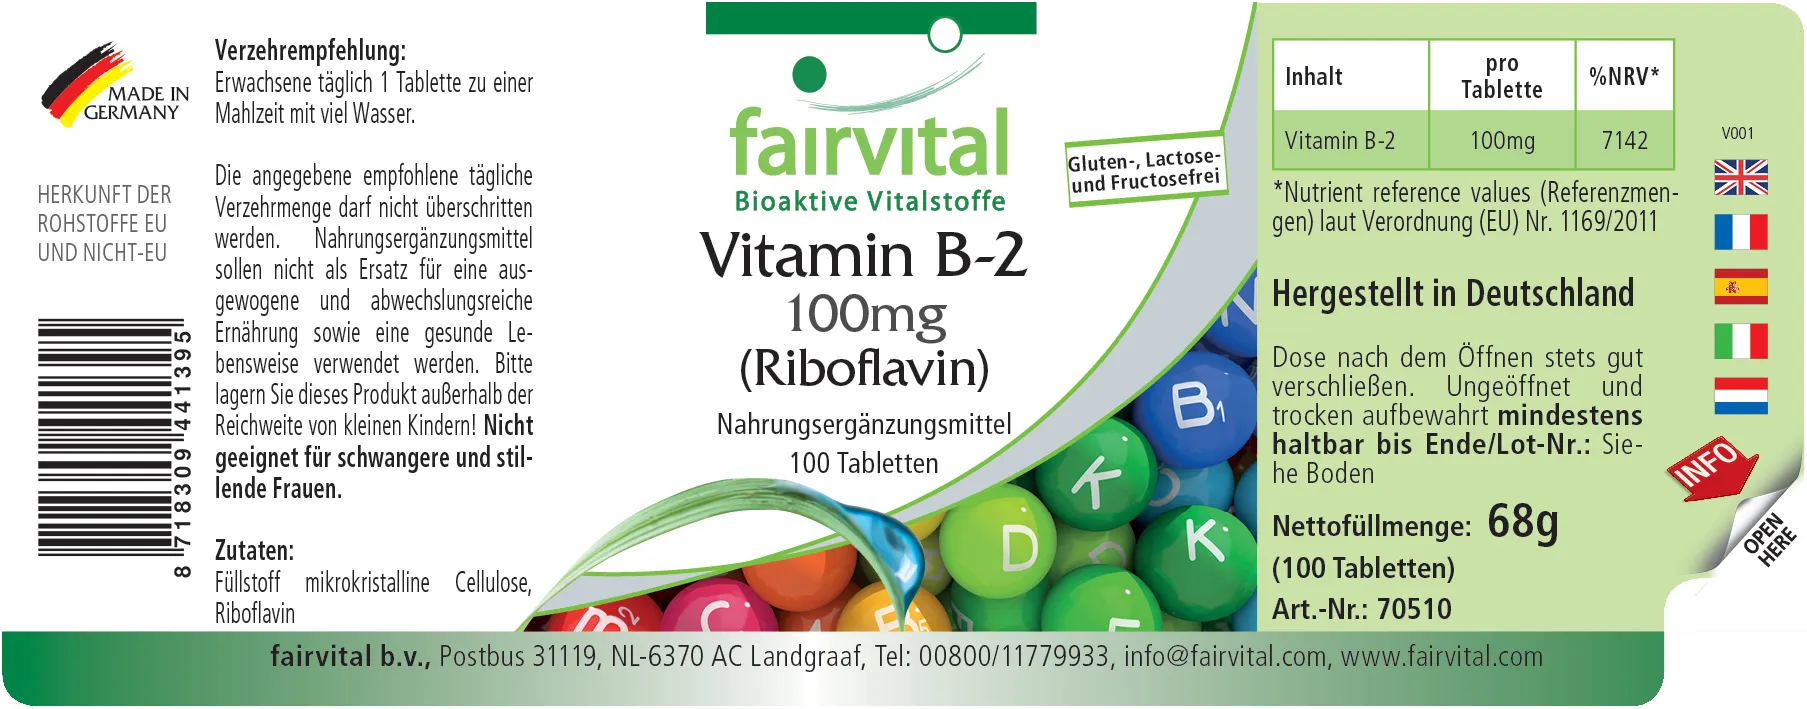 Vitamin B-2 Riboflavin